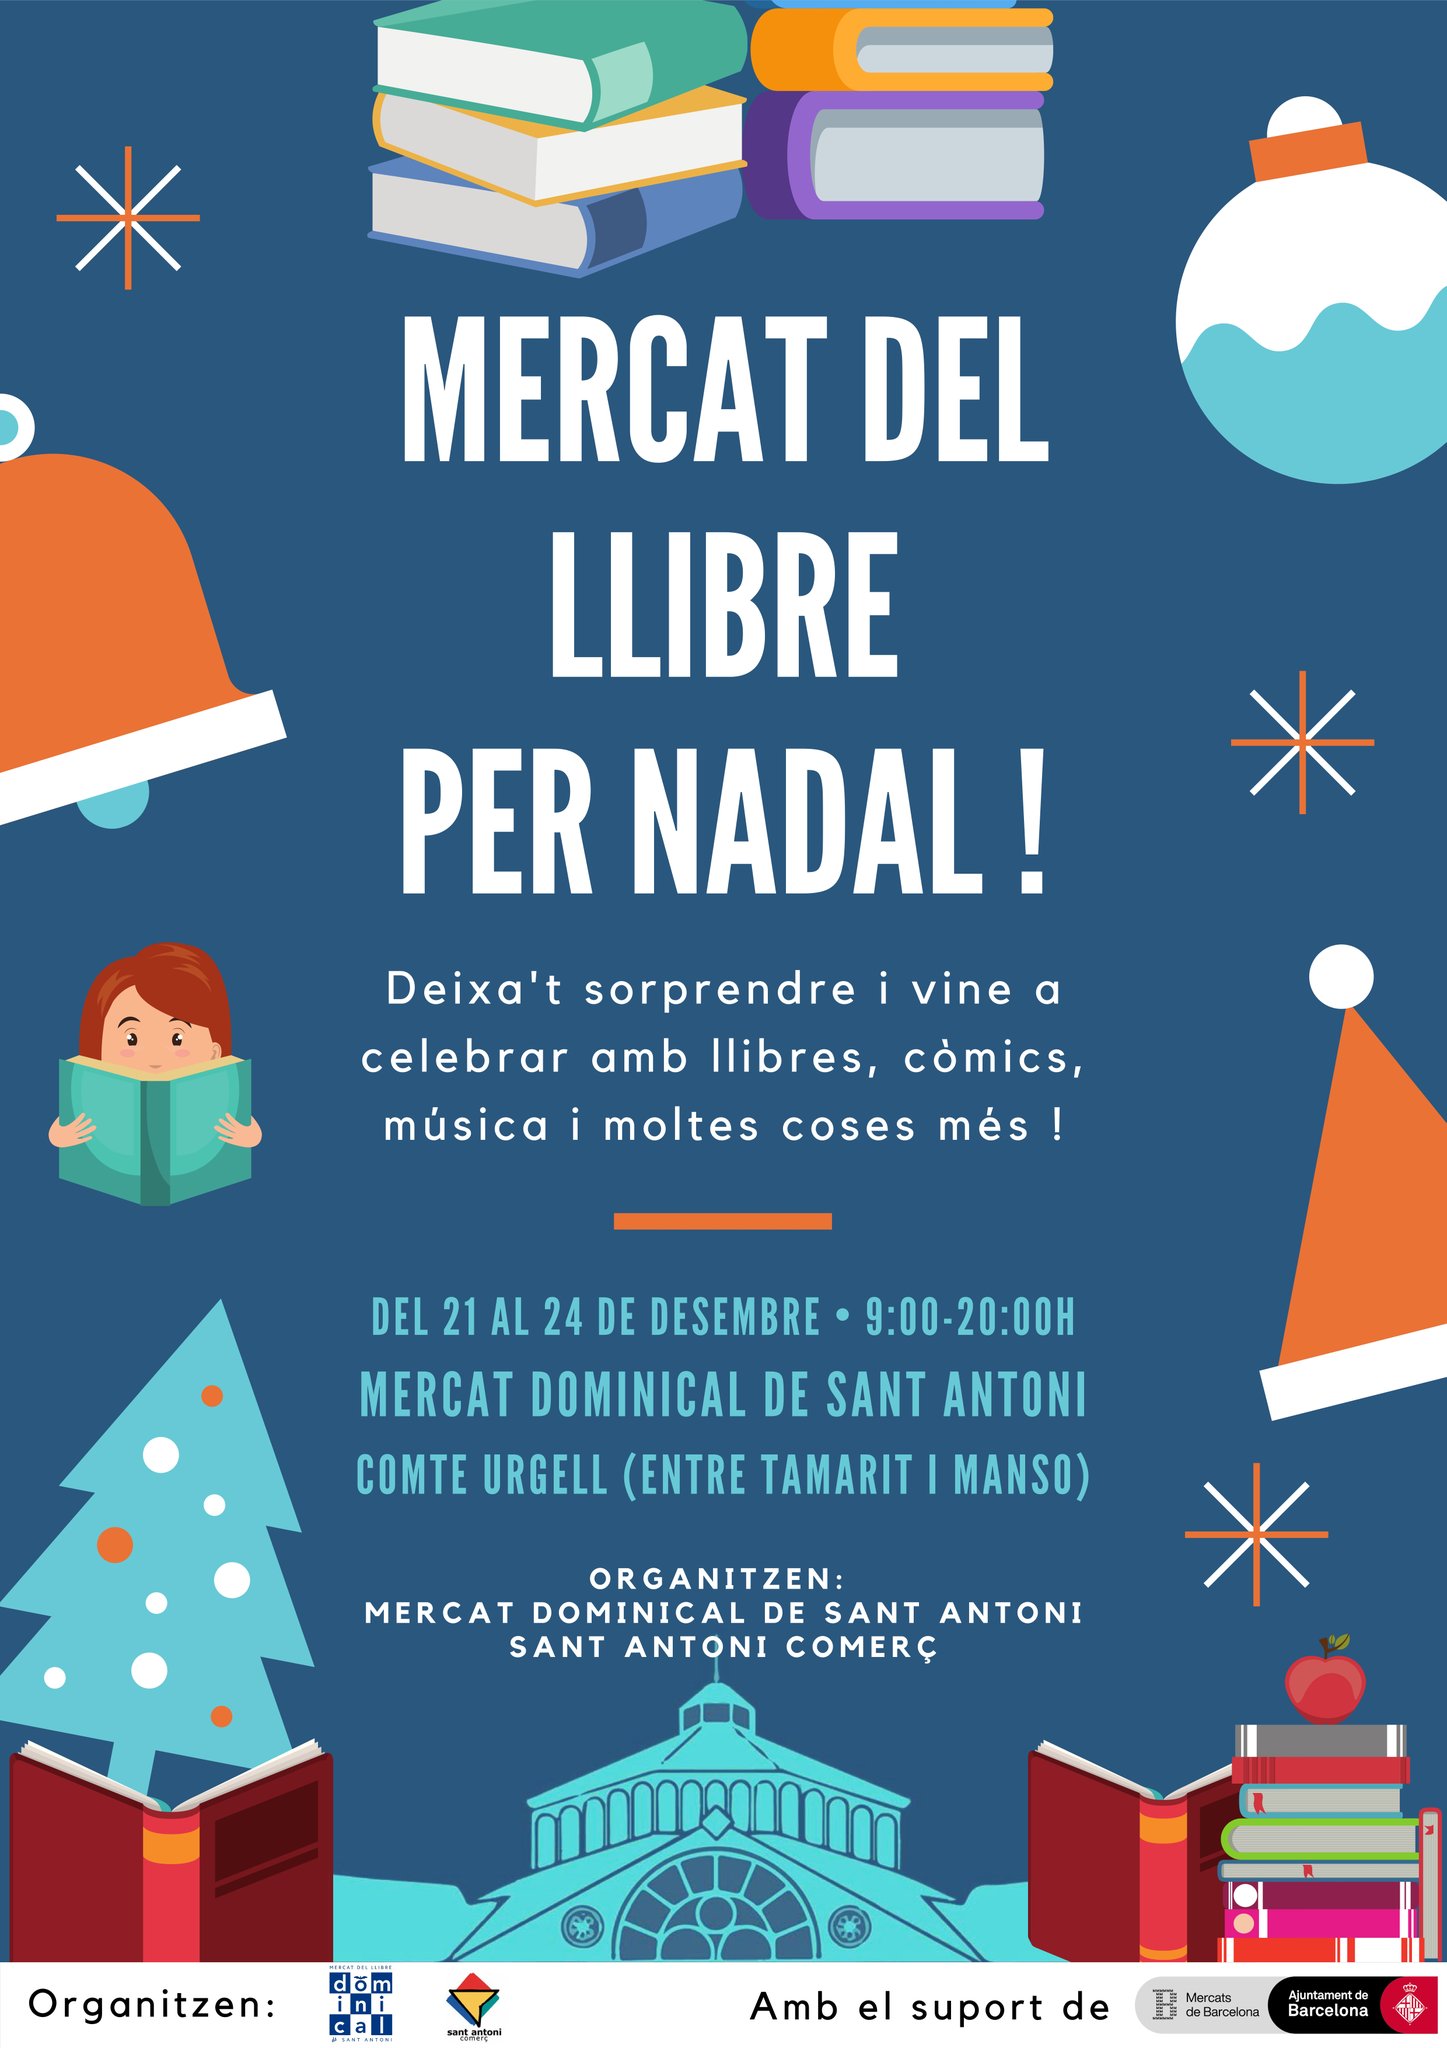 Mercat del Llibre de Sant Antoni por Navidad